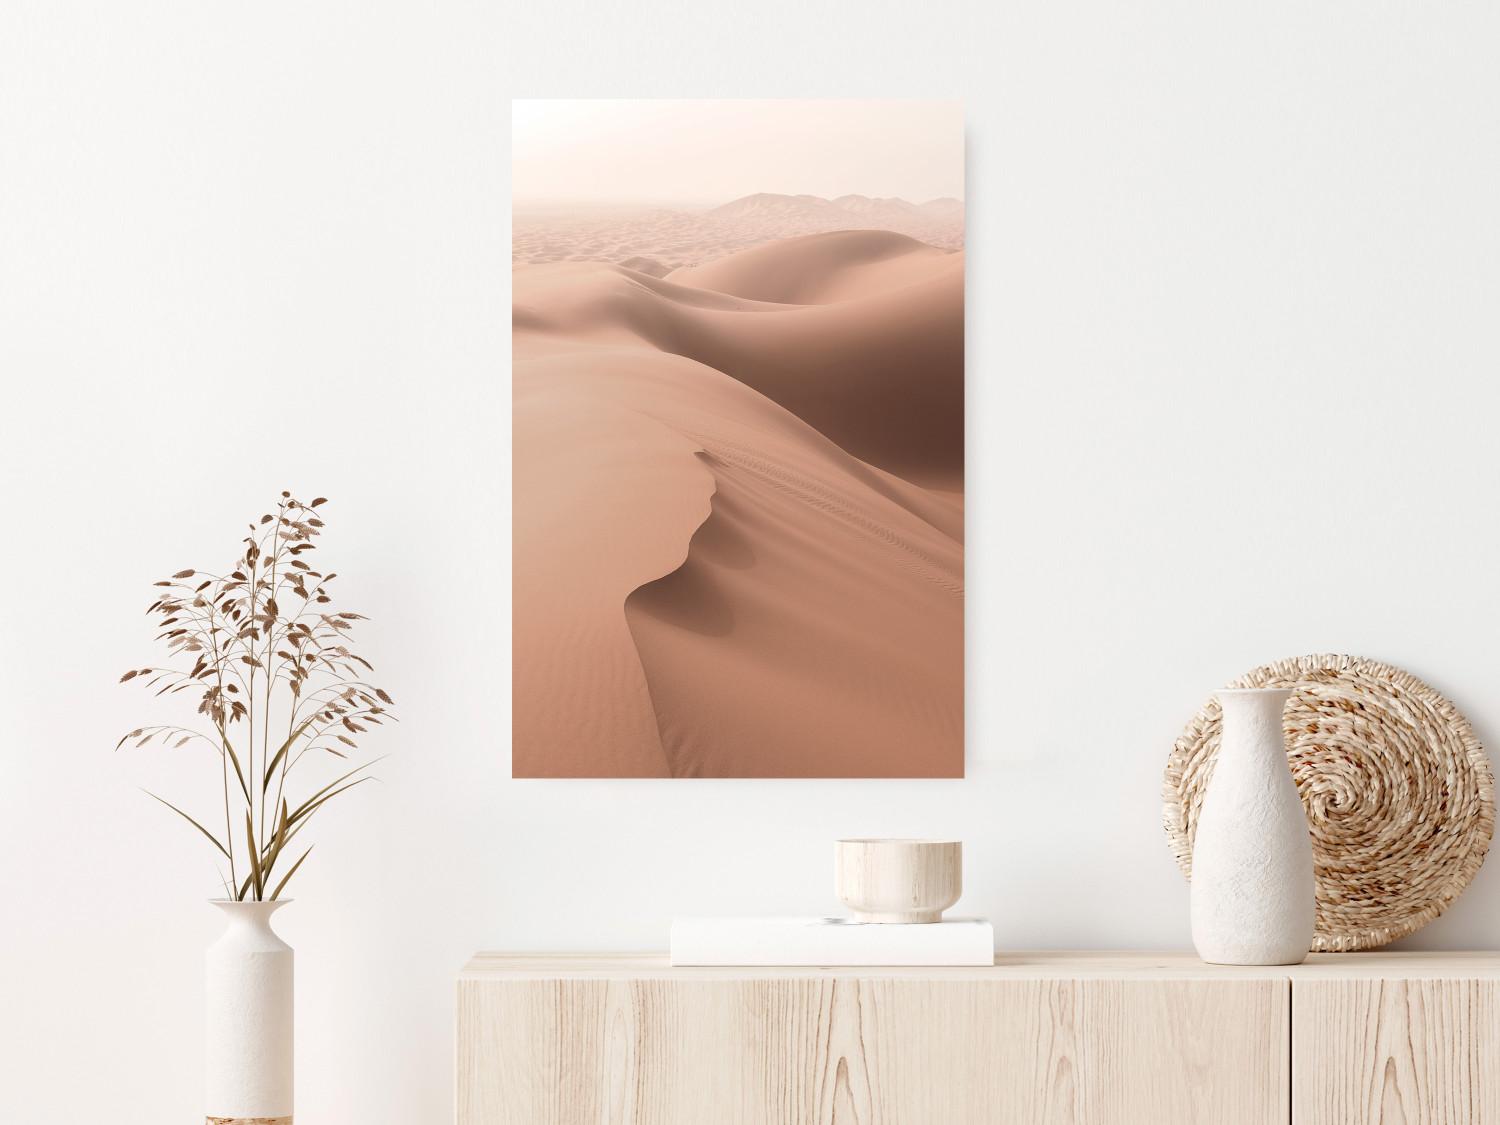 Cartel Espacio arenoso - paisaje de dunas de arena en desierto marrón